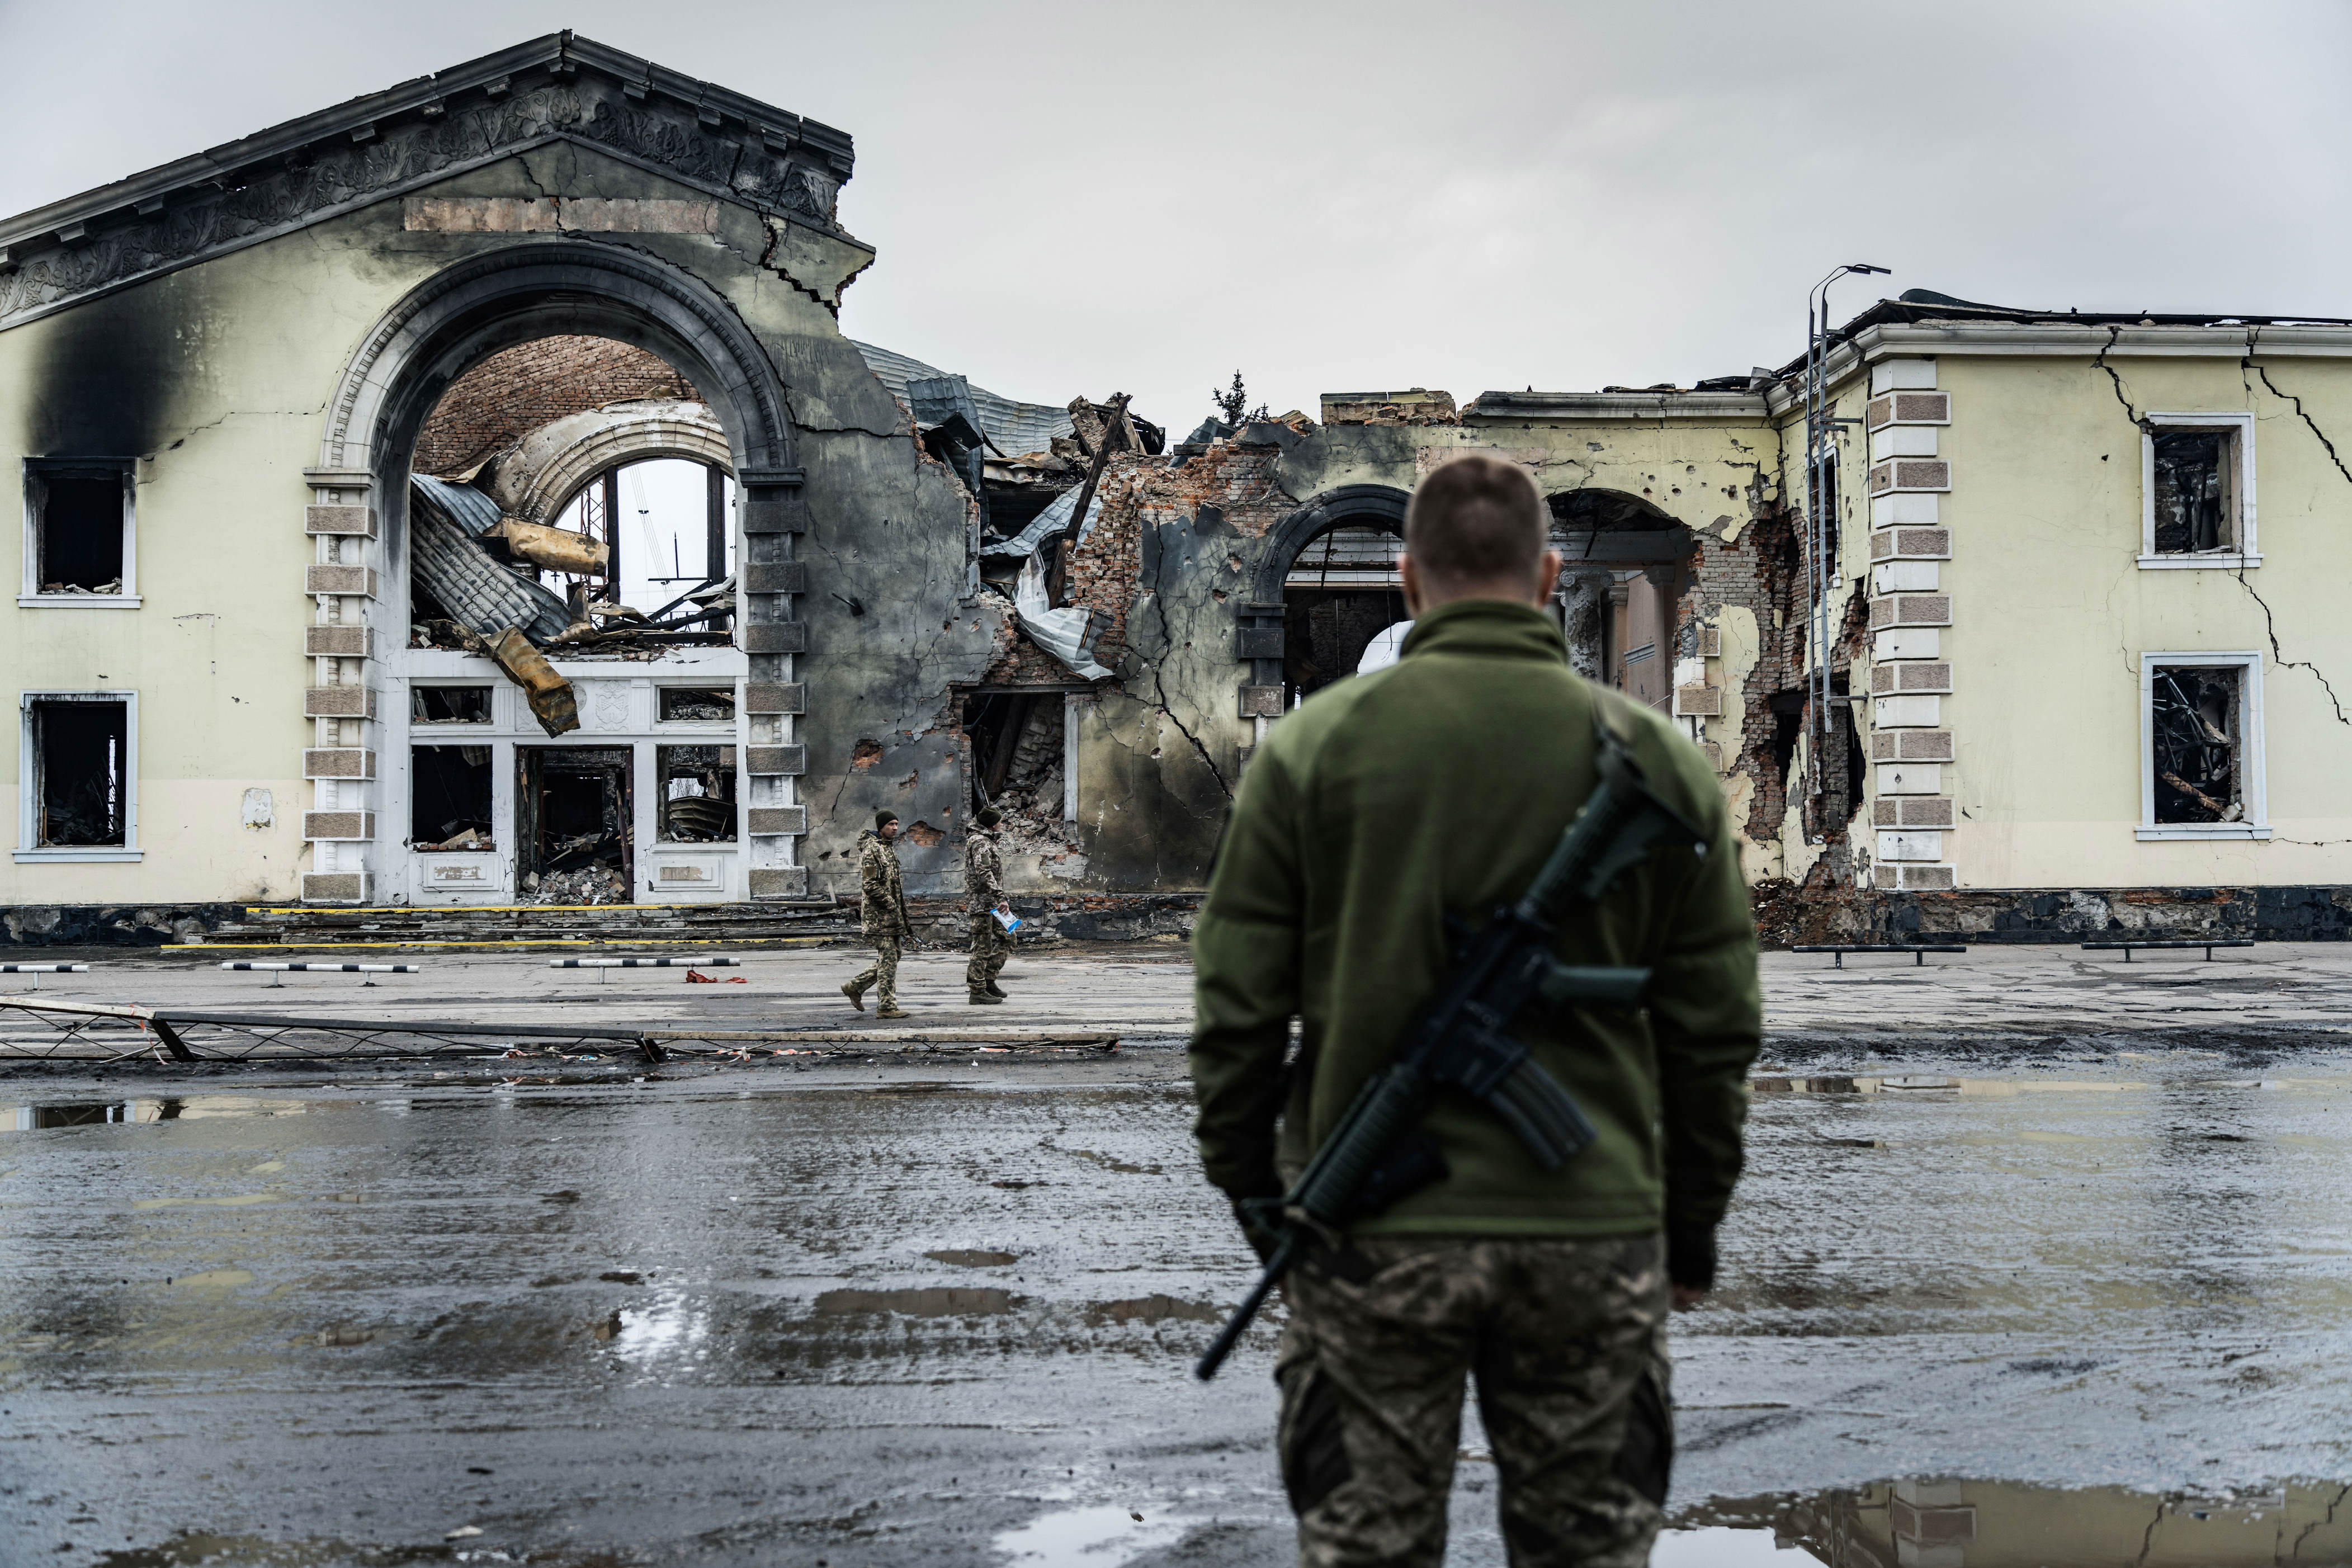 die ukrainische flugabwehr wird immer löchriger – das gibt russland die chance für noch verheerendere angriffe